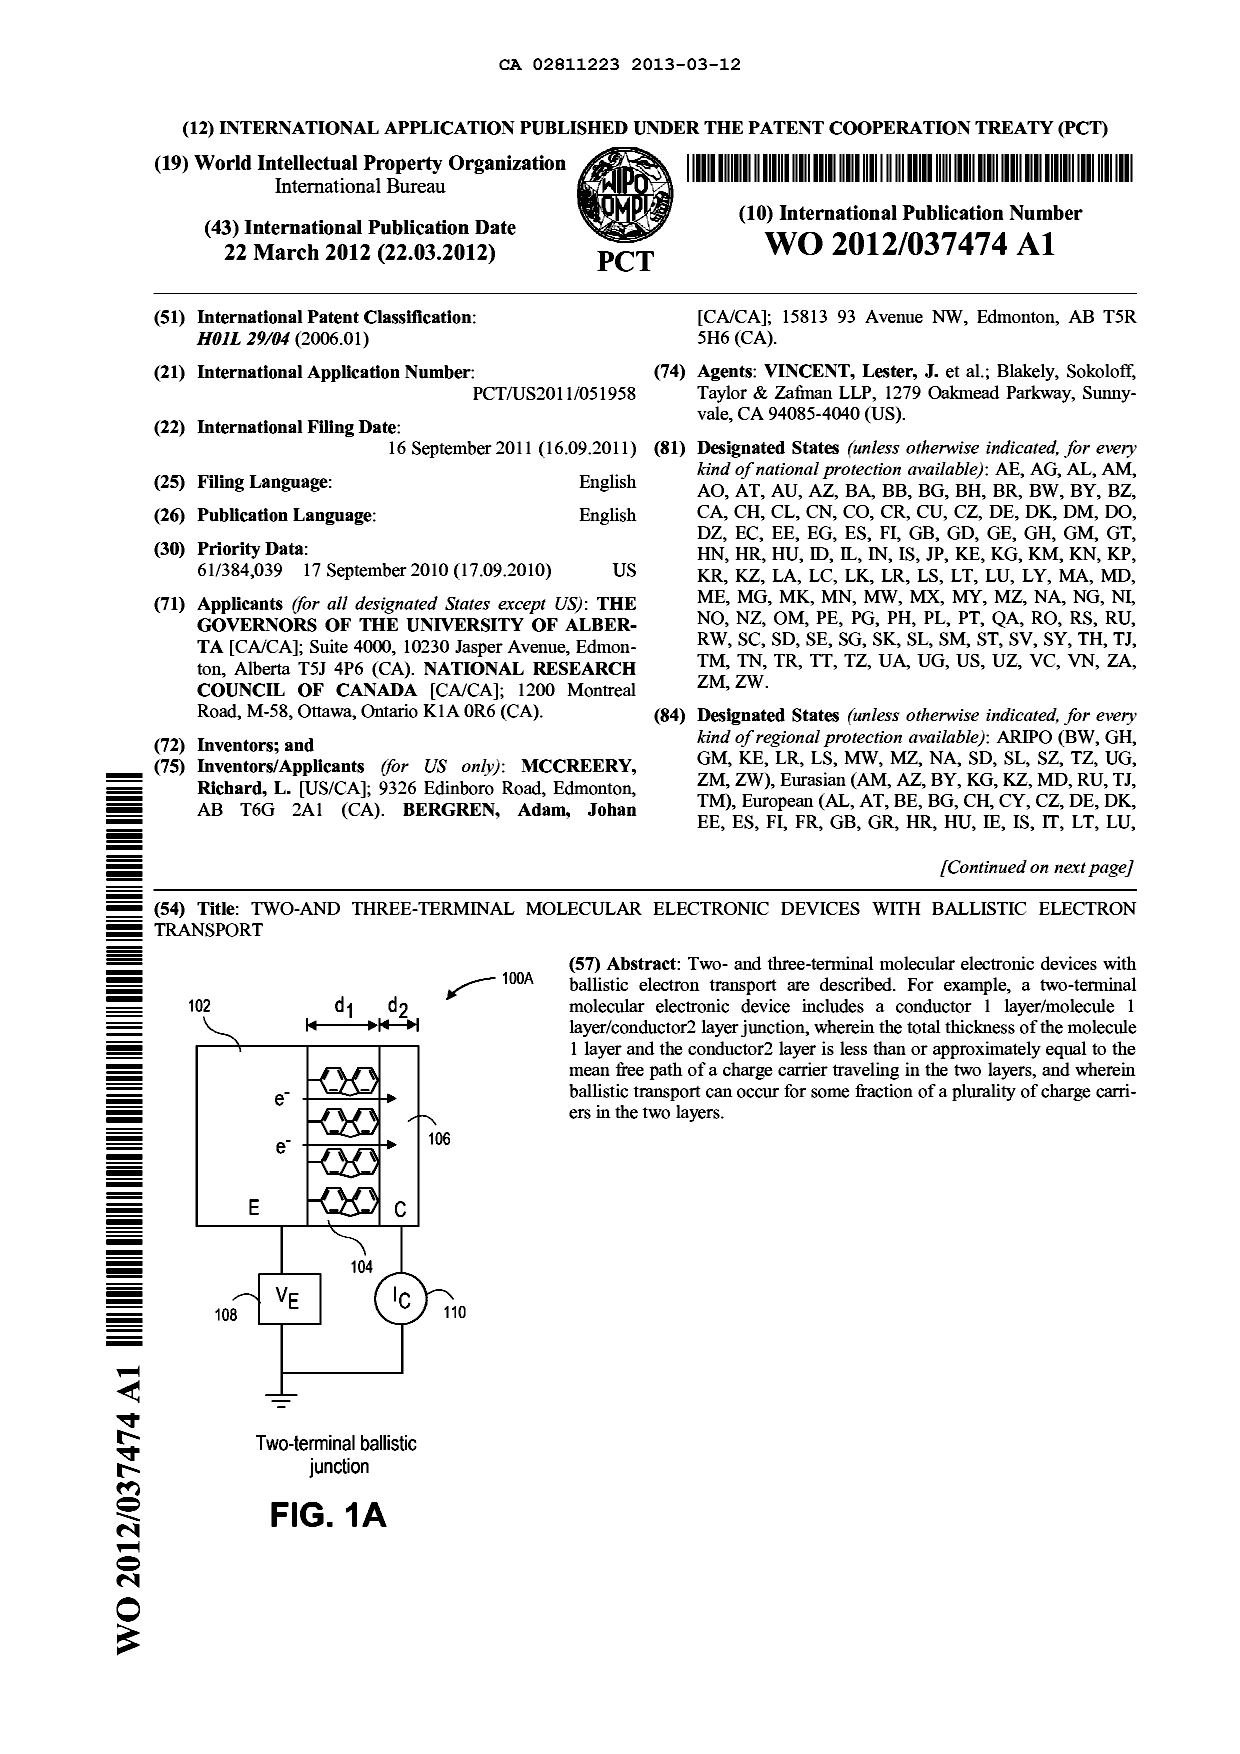 Document de brevet canadien 2811223. Abrégé 20130312. Image 1 de 2